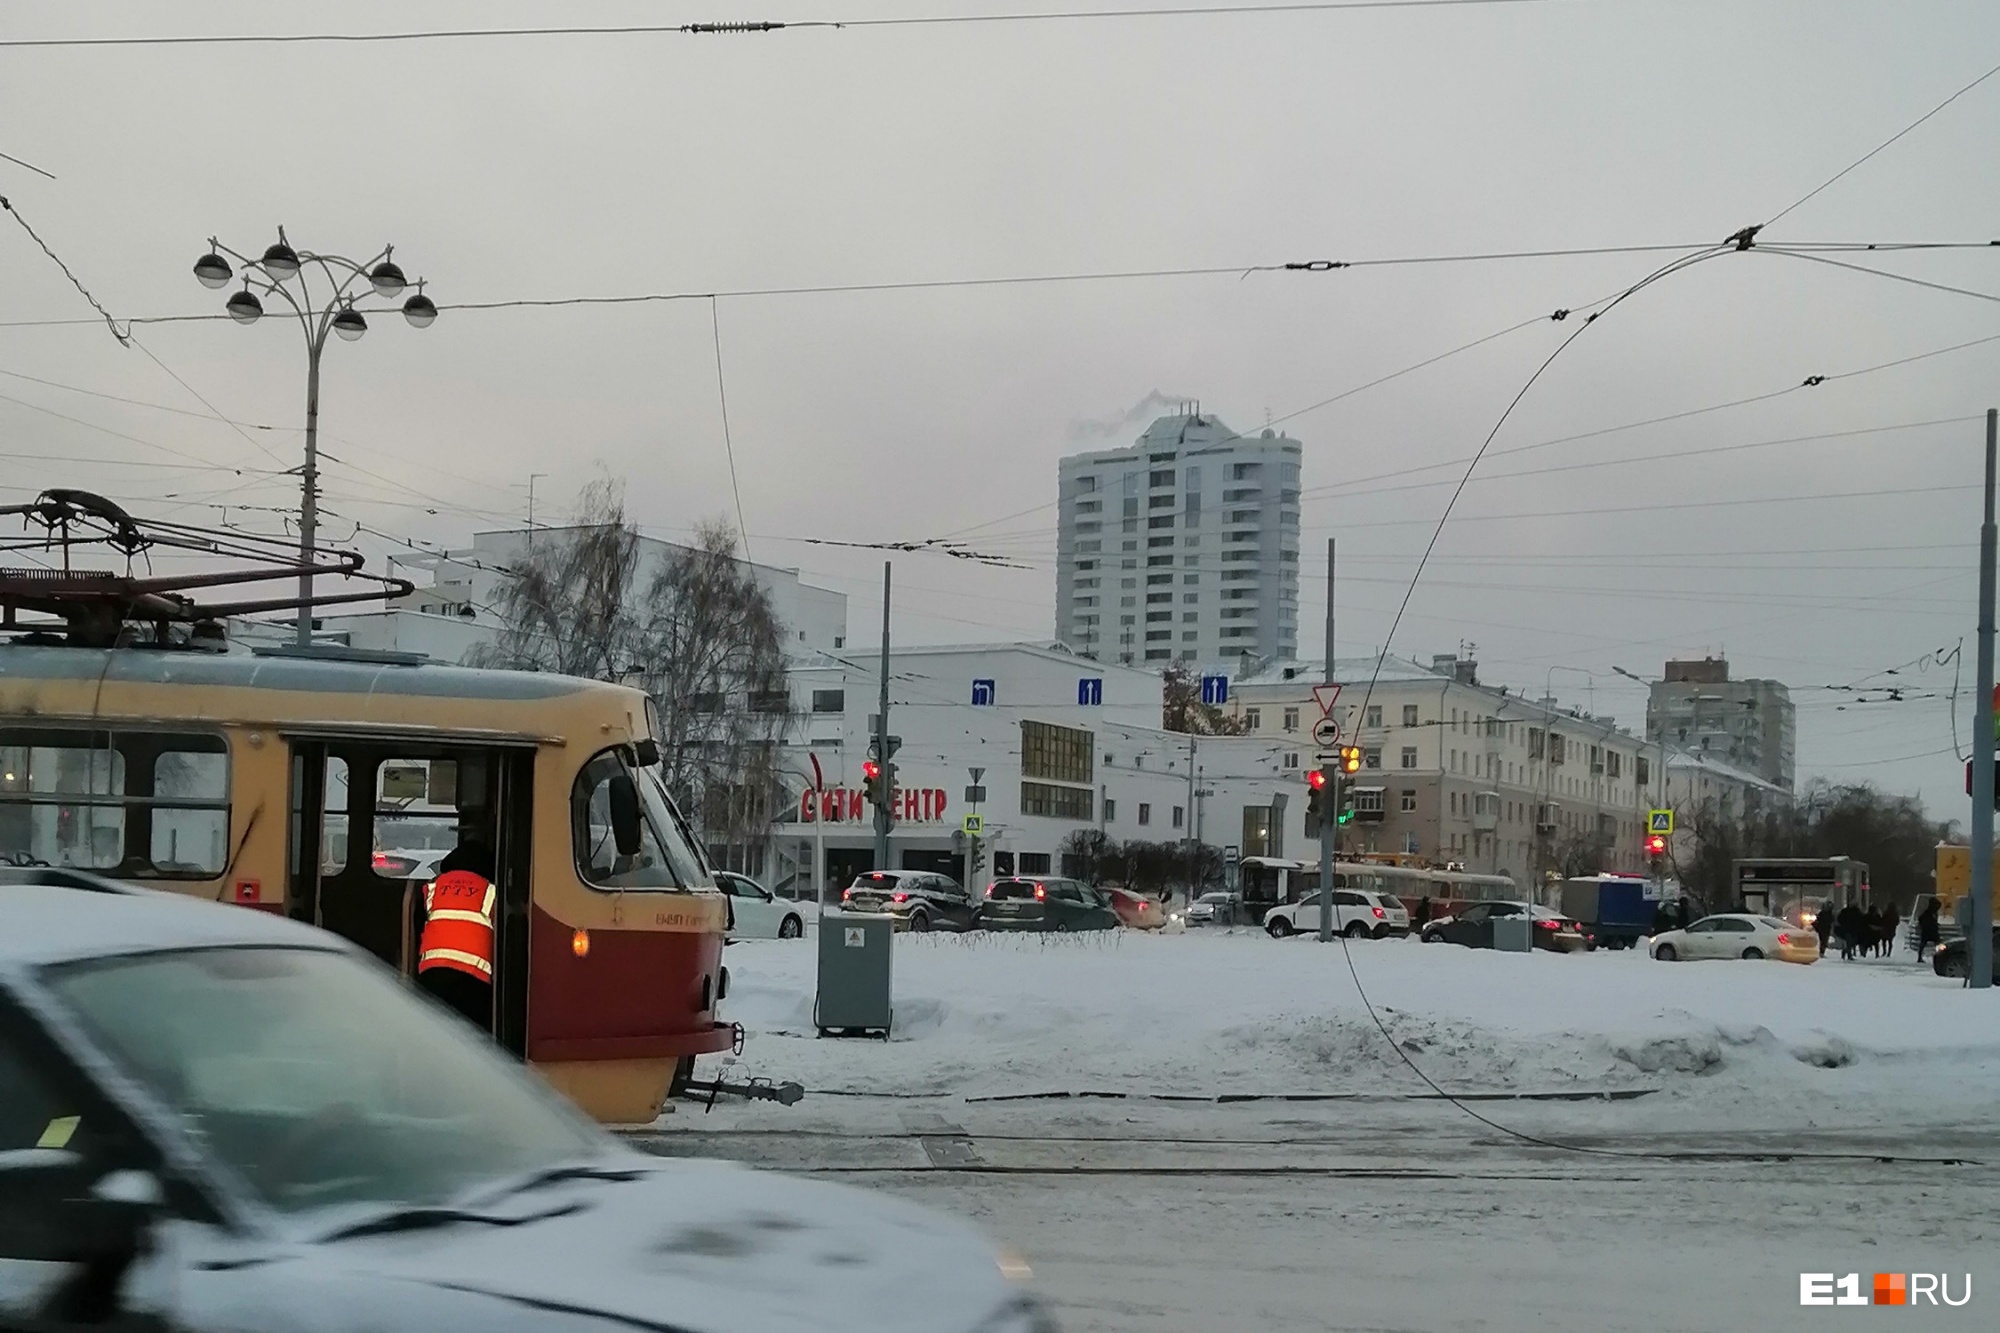 Движение трамваев в центре Екатеринбурга парализовано из-за обрыва провода